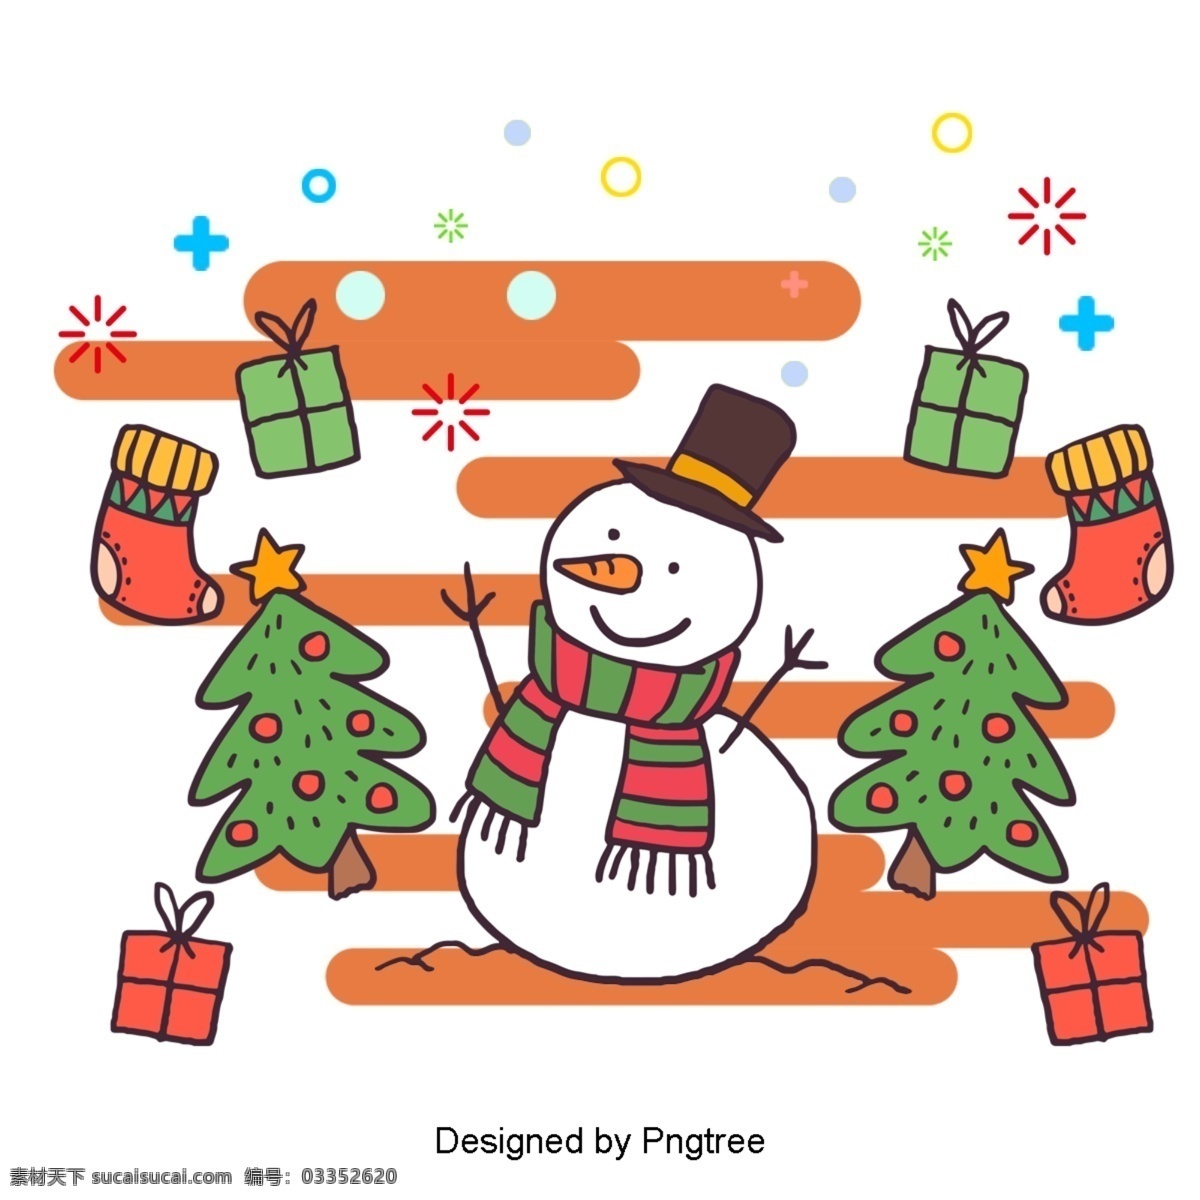 雪人 礼盒 橙色 围巾 圣诞节 星星 圣诞树 帽子 圣 眼睛